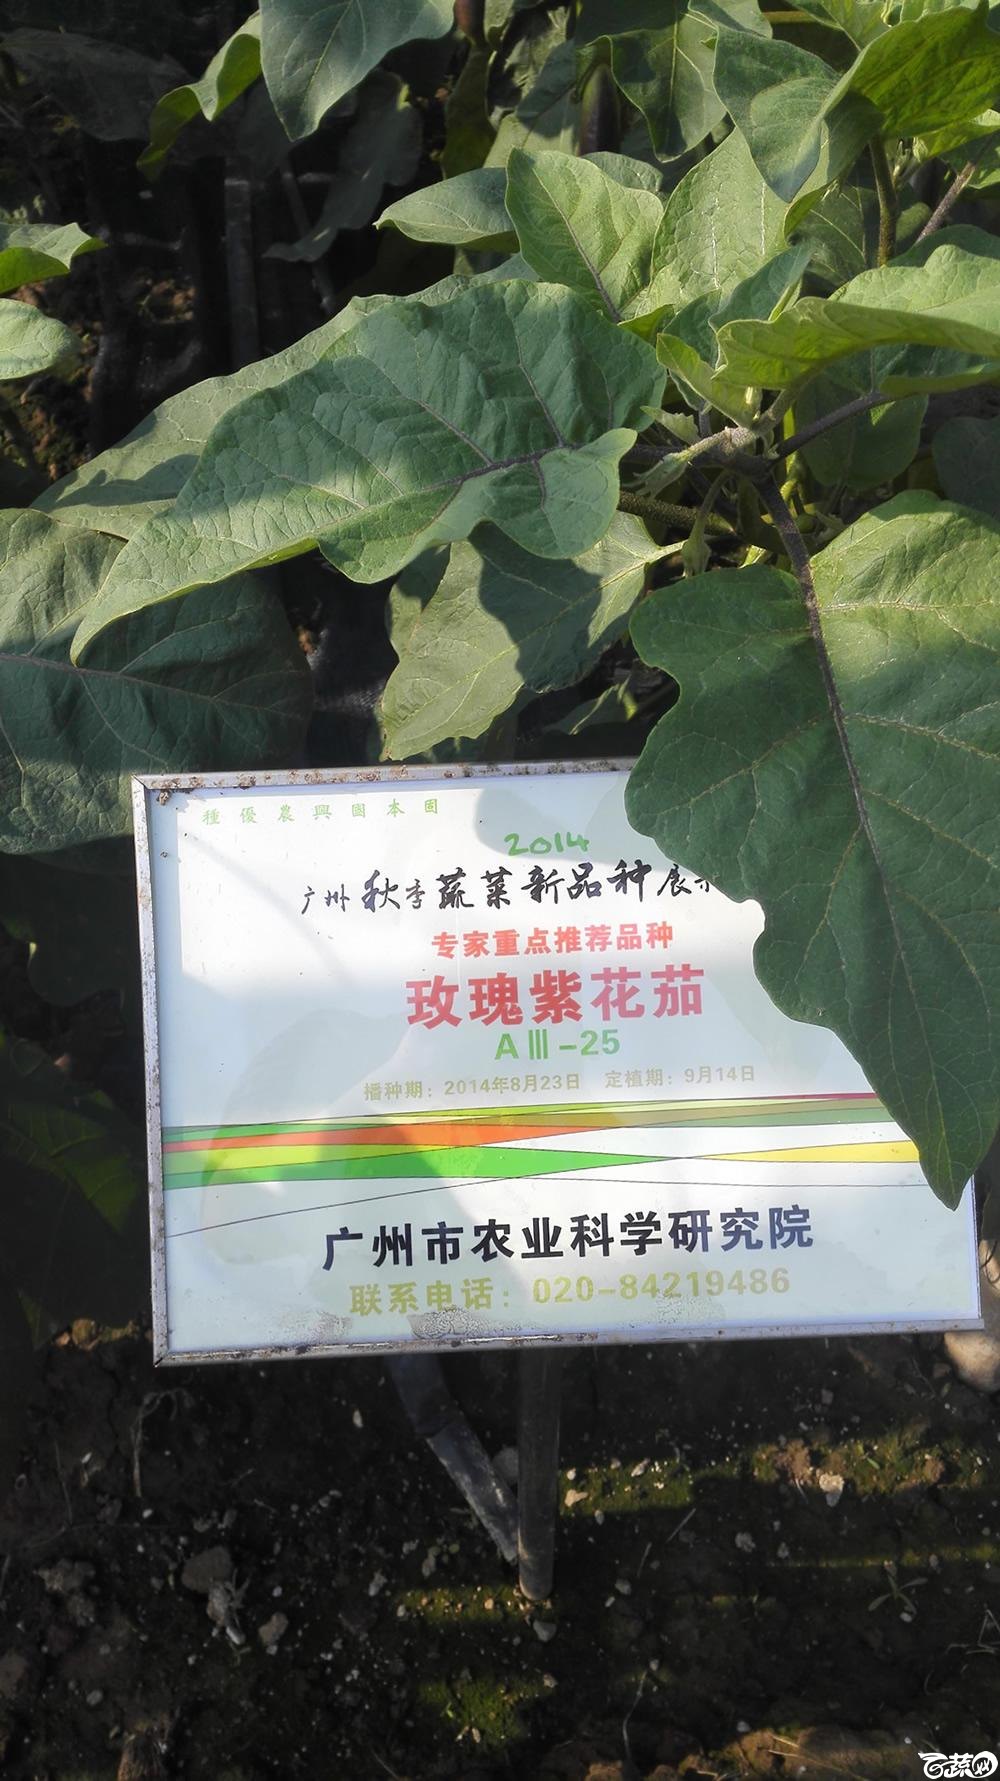 2014年12月10号广州市农科院南沙秋季蔬菜新品种展示会 茄子_023.jpg